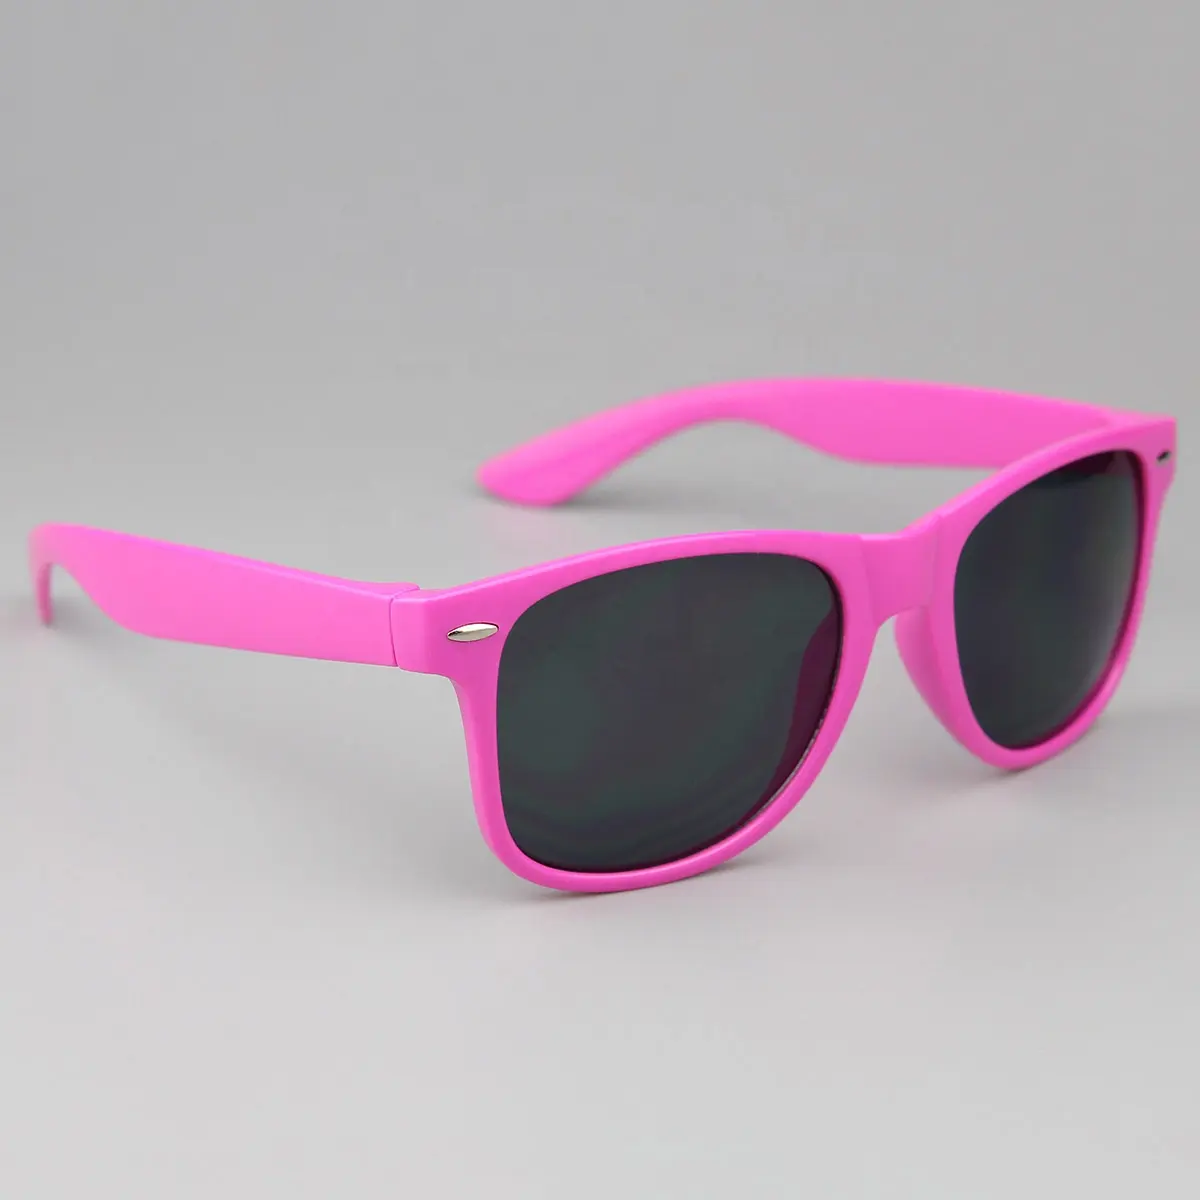 نظارة شمسية UV400 فاخرة ترويجية حمراء اللون بشعار مخصص نظارة شمسية للرجال من علامات تجارية شهيرة رخيصة من البلاستيك